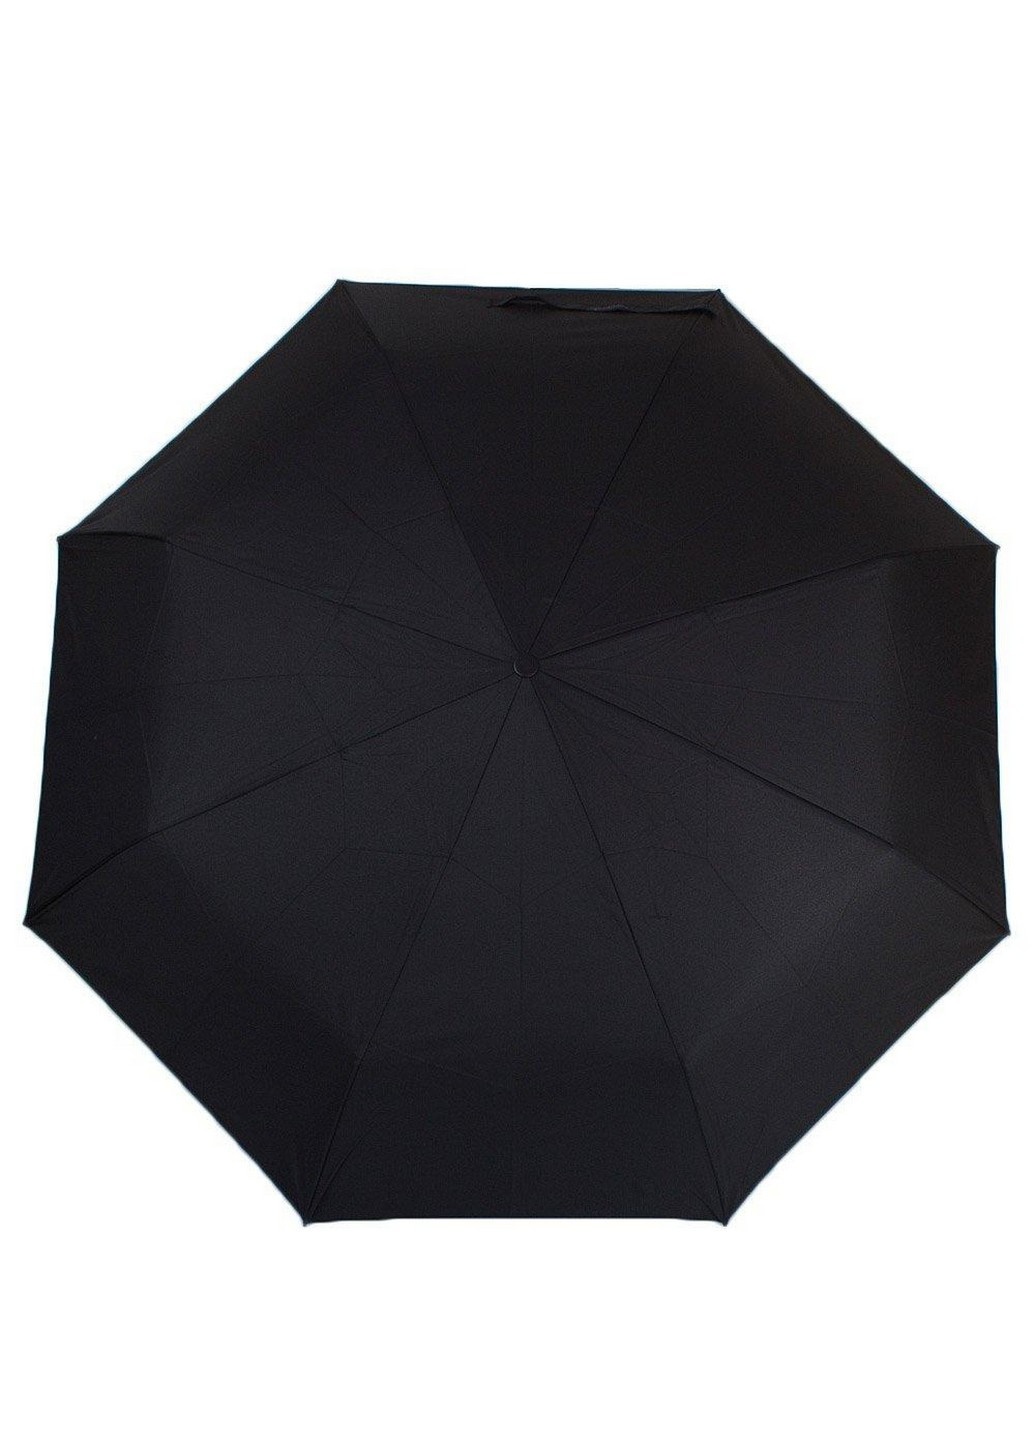 Зонт мужской компактный механический 97 см Happy Rain (255405962)